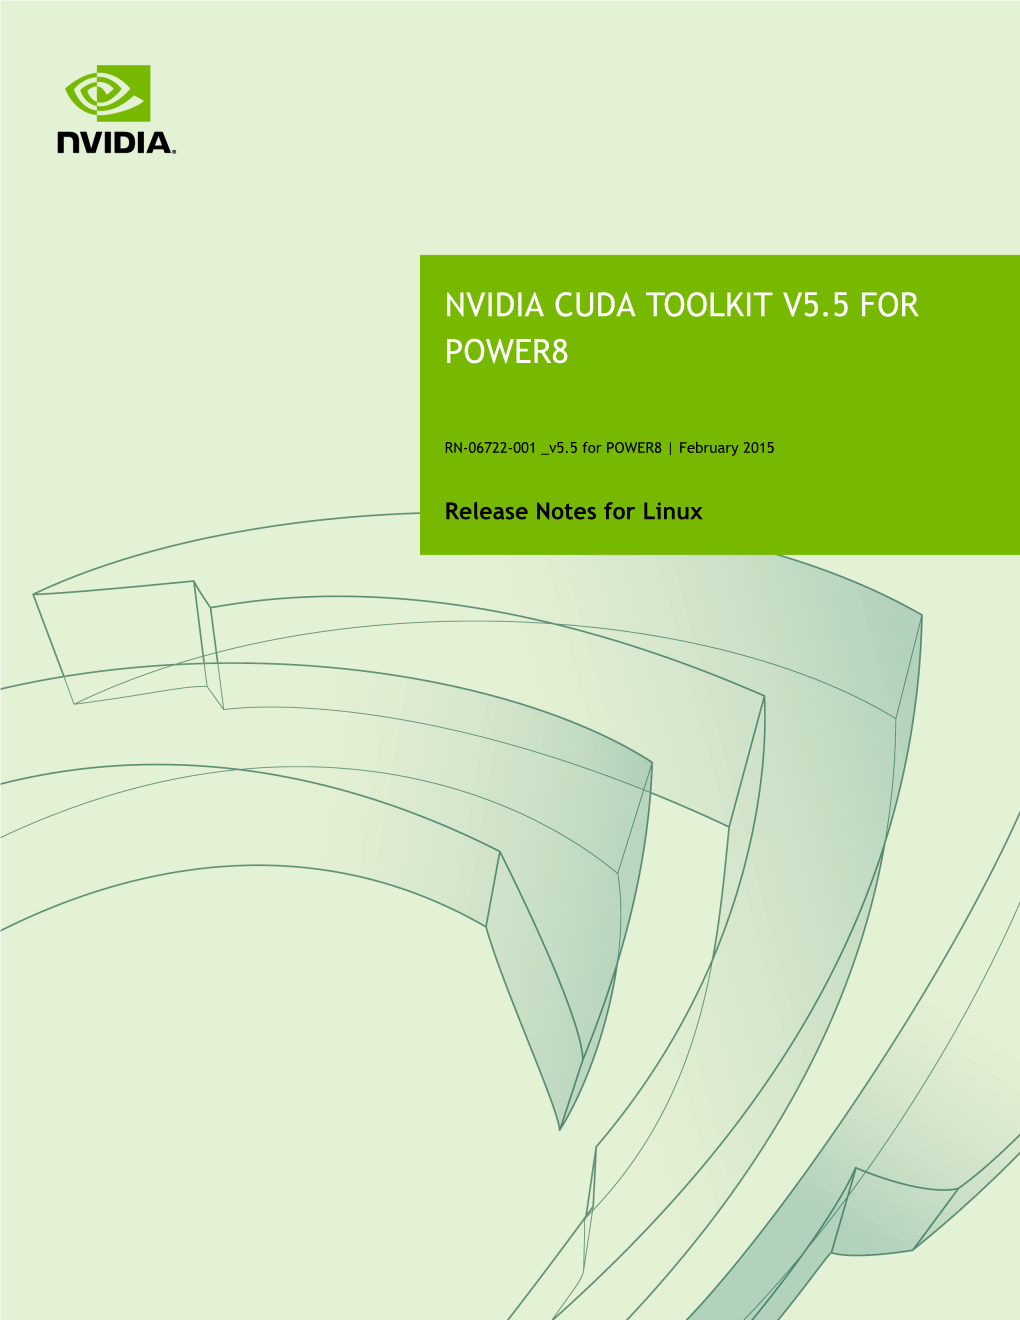 Nvidia Cuda Toolkit V5.5 for Power8